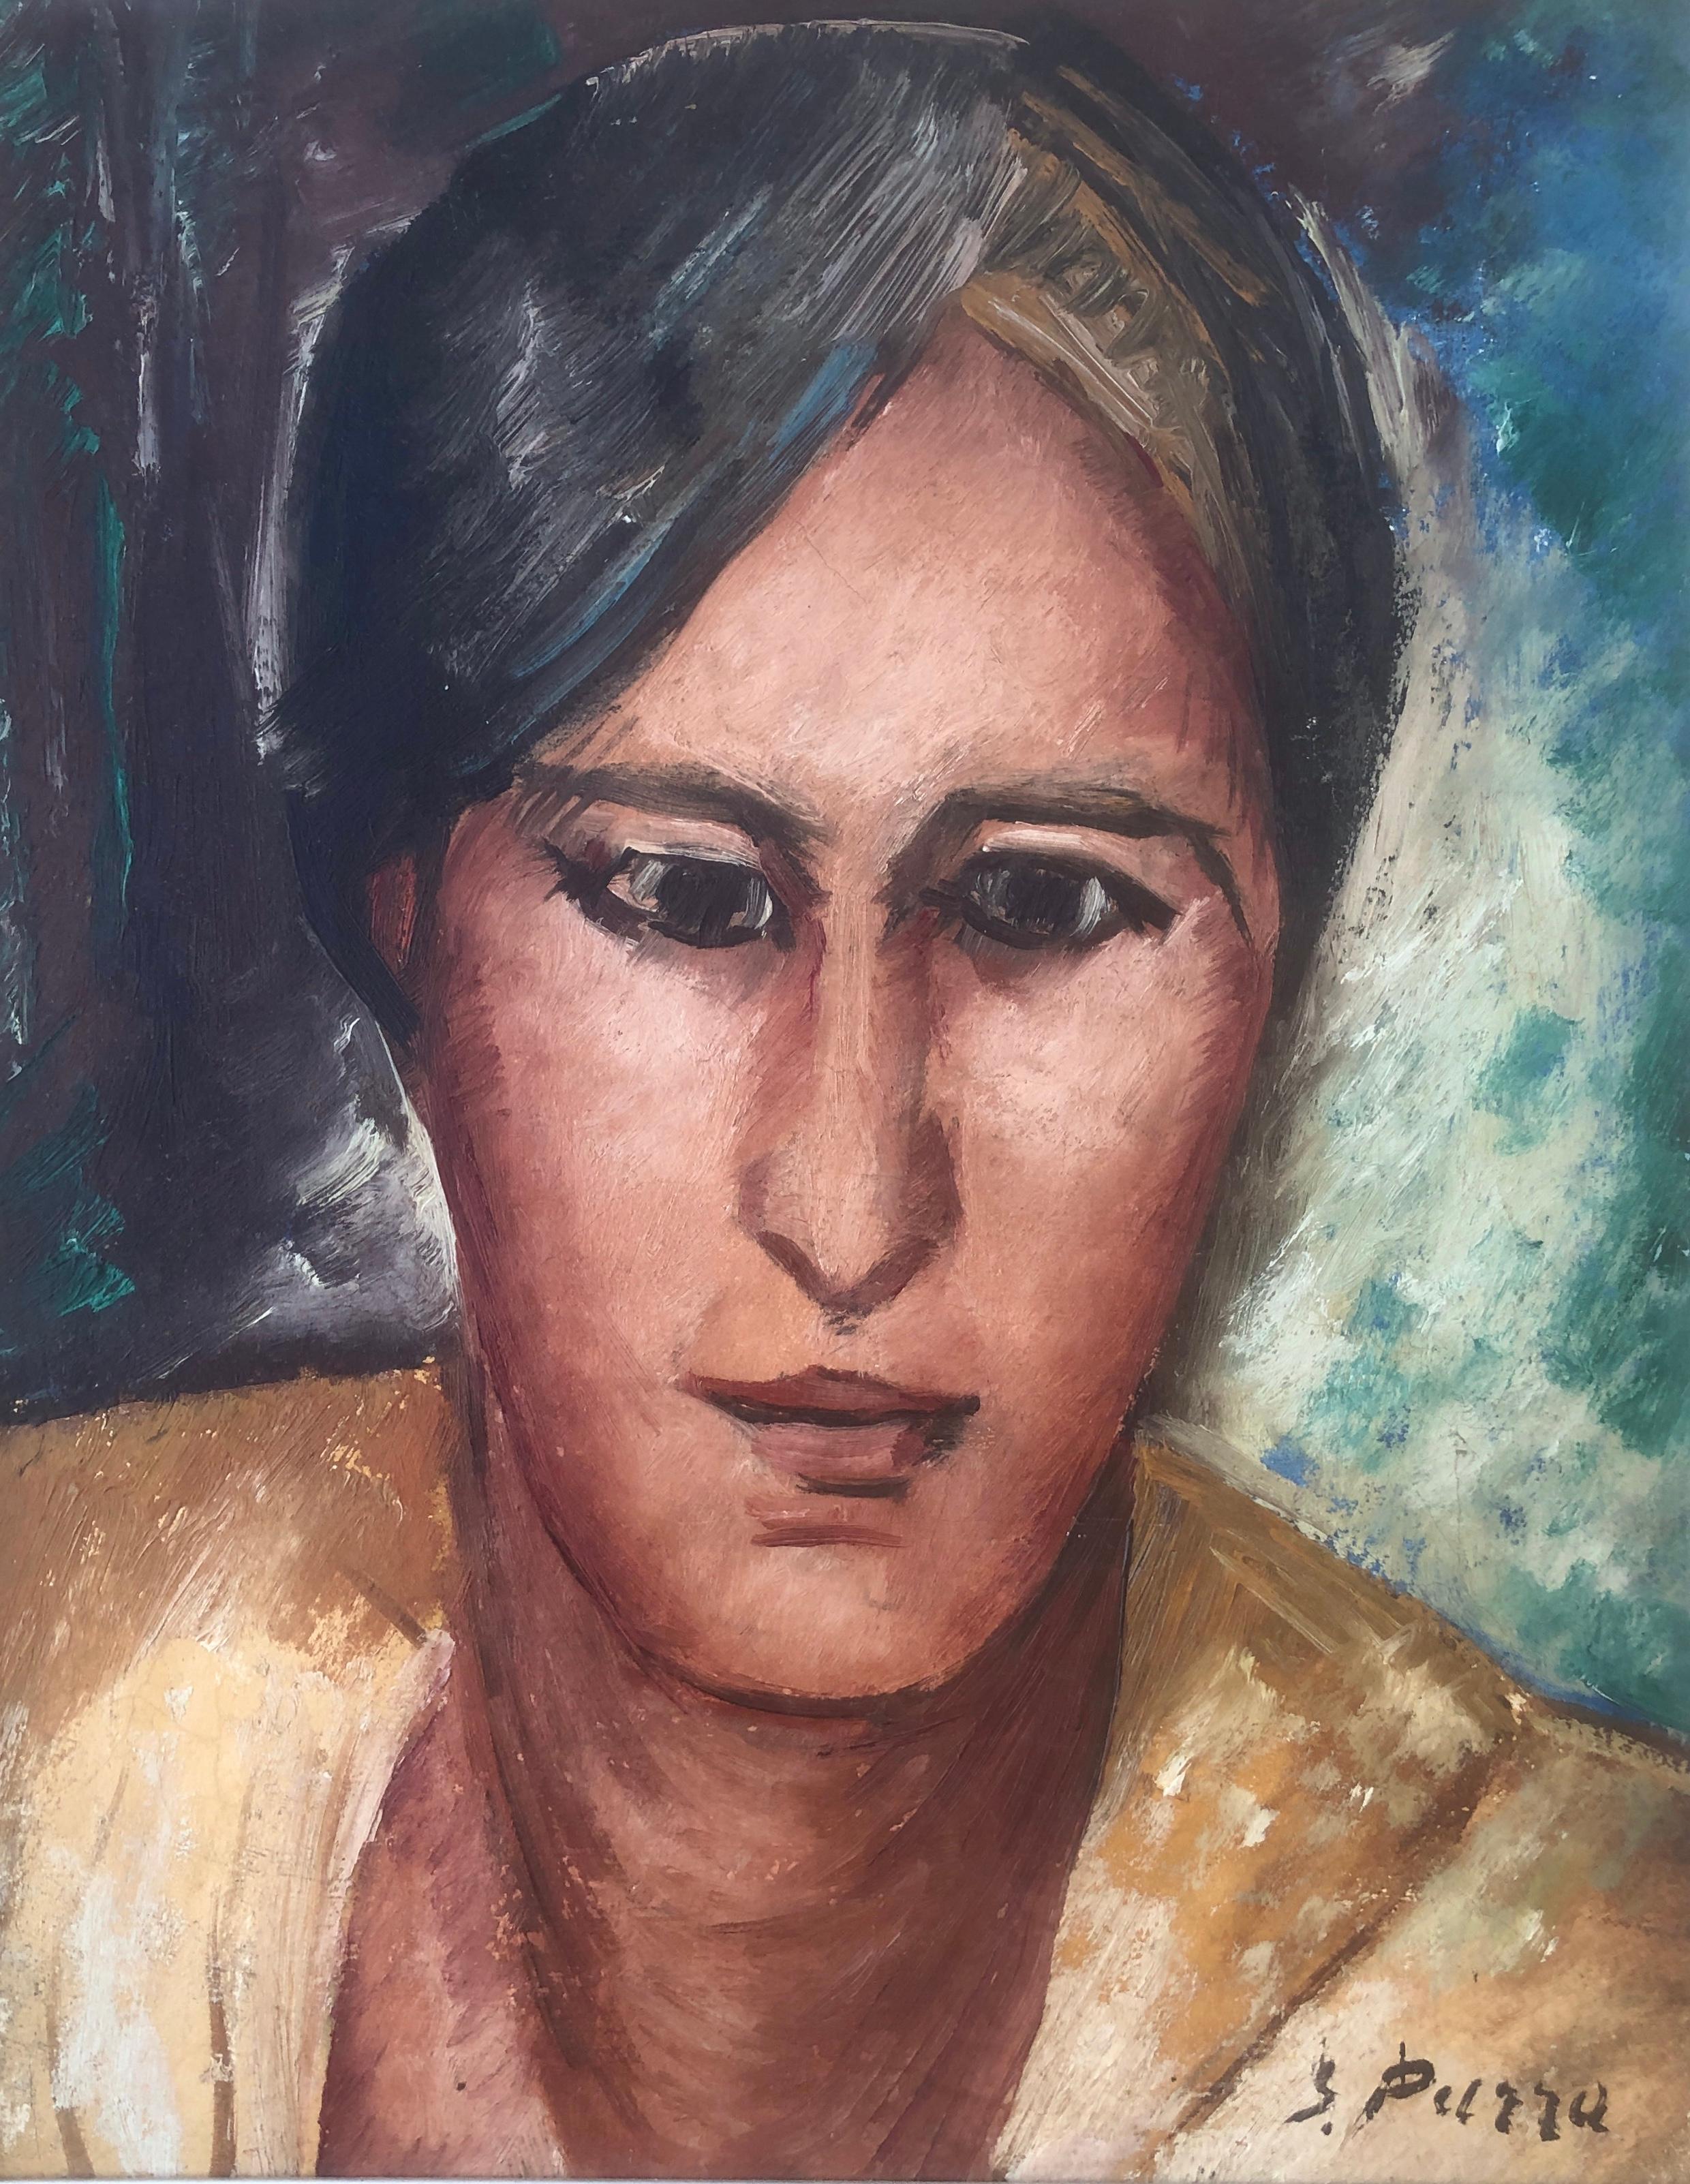 Ginés Parra Portrait Painting – Porträt Öl auf Leinwand Gemälde Gines Parra Spanien